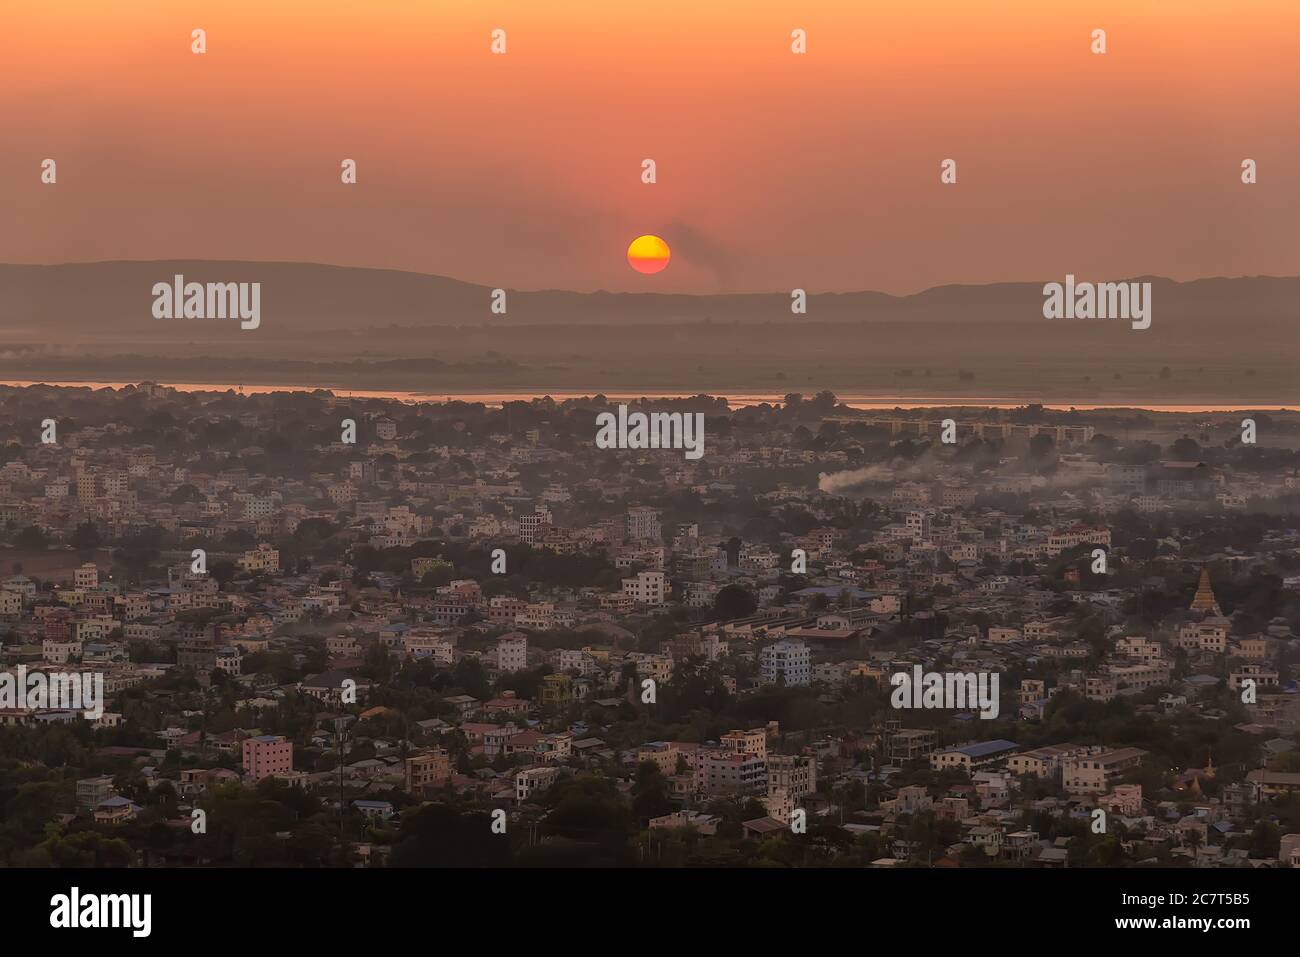 Coucher de soleil sur la rivière Irrawaddy et la ville de Mandalay, Myanmar. Mandalay est la deuxième plus grande ville du Myanmar, après Yangon Banque D'Images